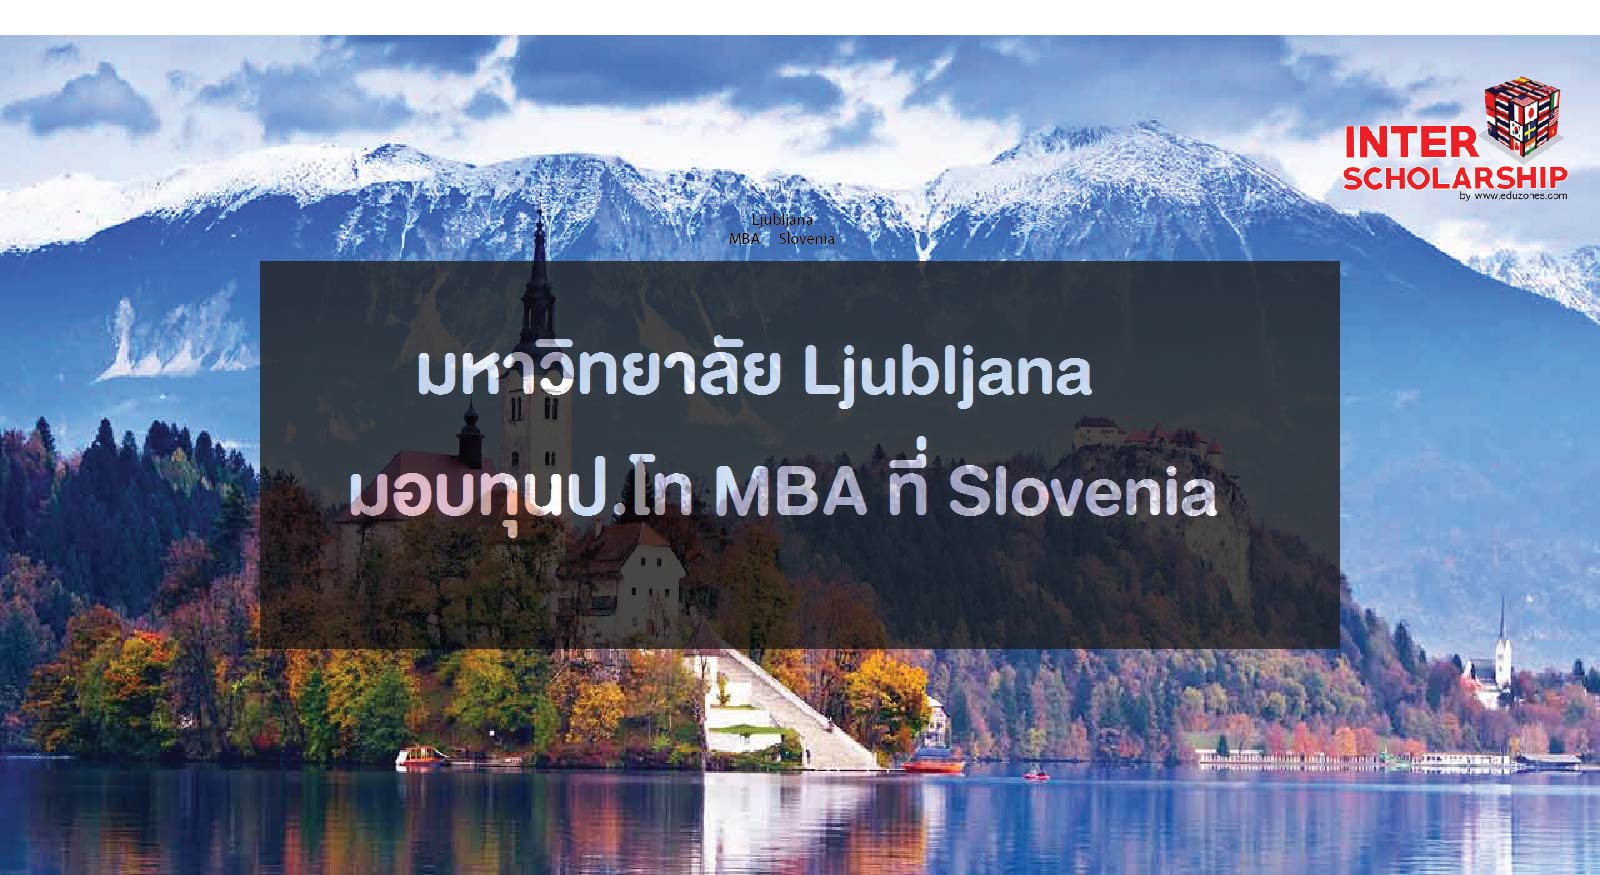  Է Ljubljana 